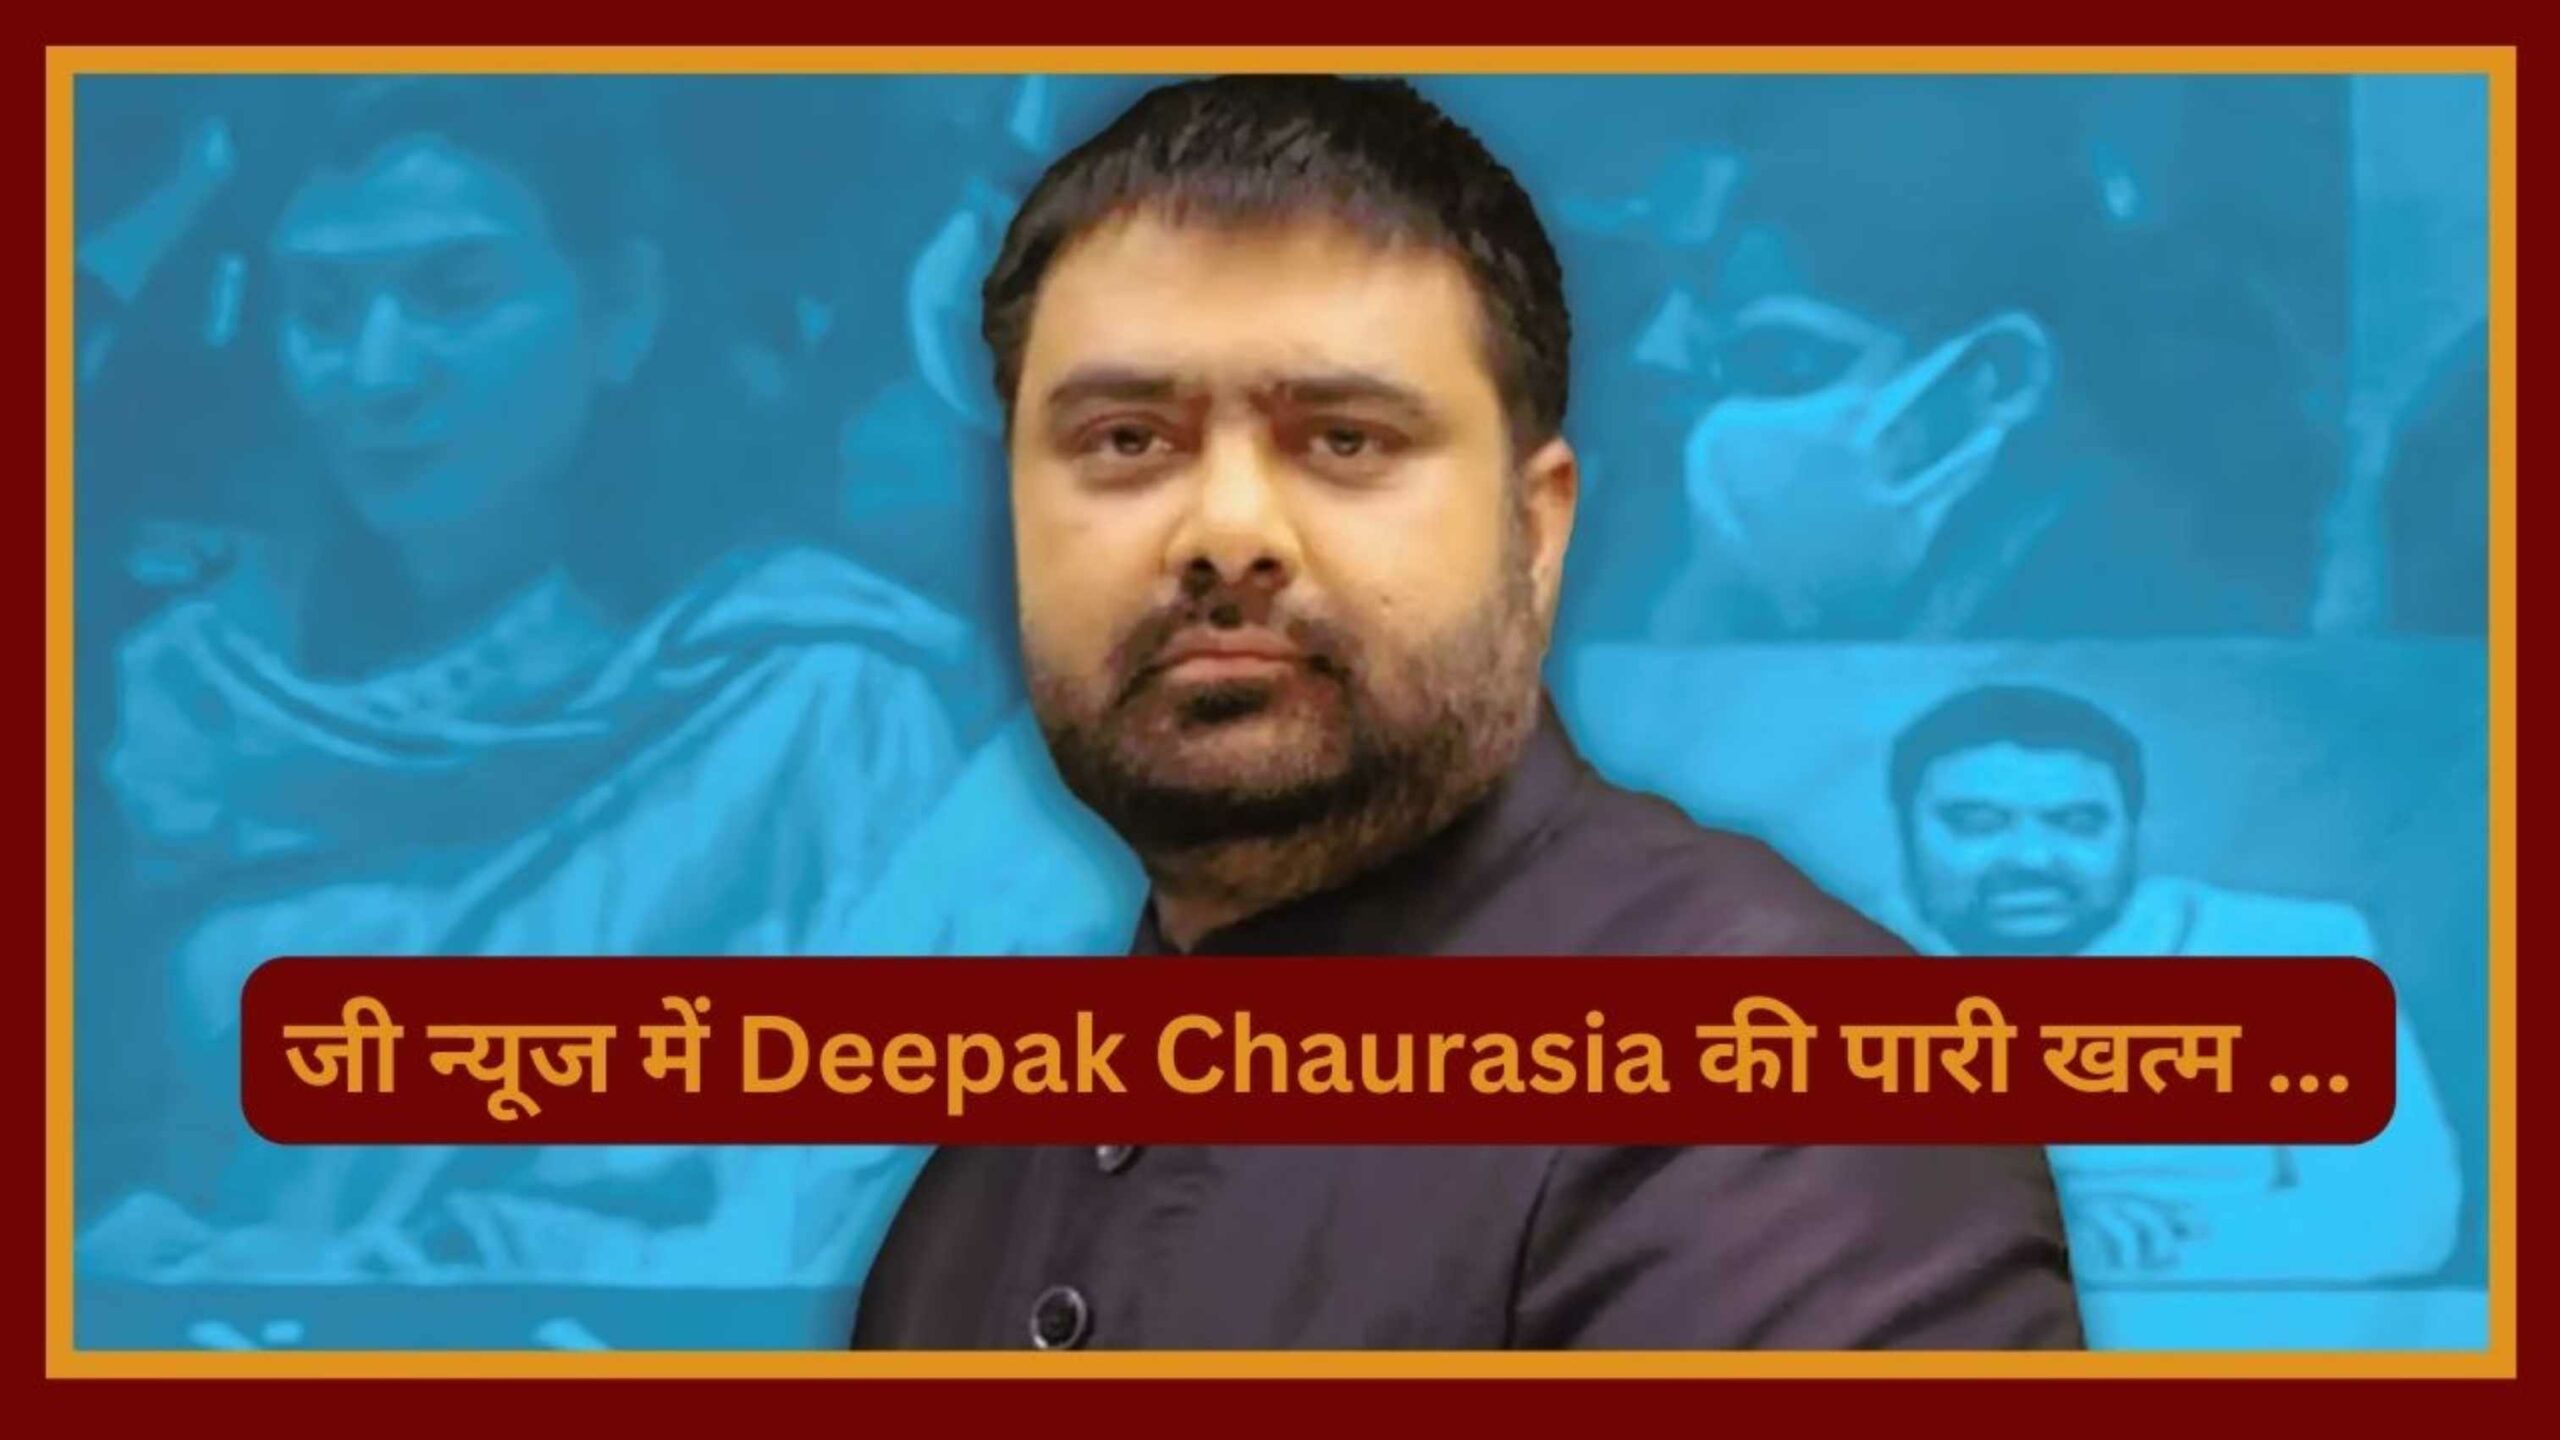 जी न्यूज में Deepak Chaurasia की पारी खत्म ...